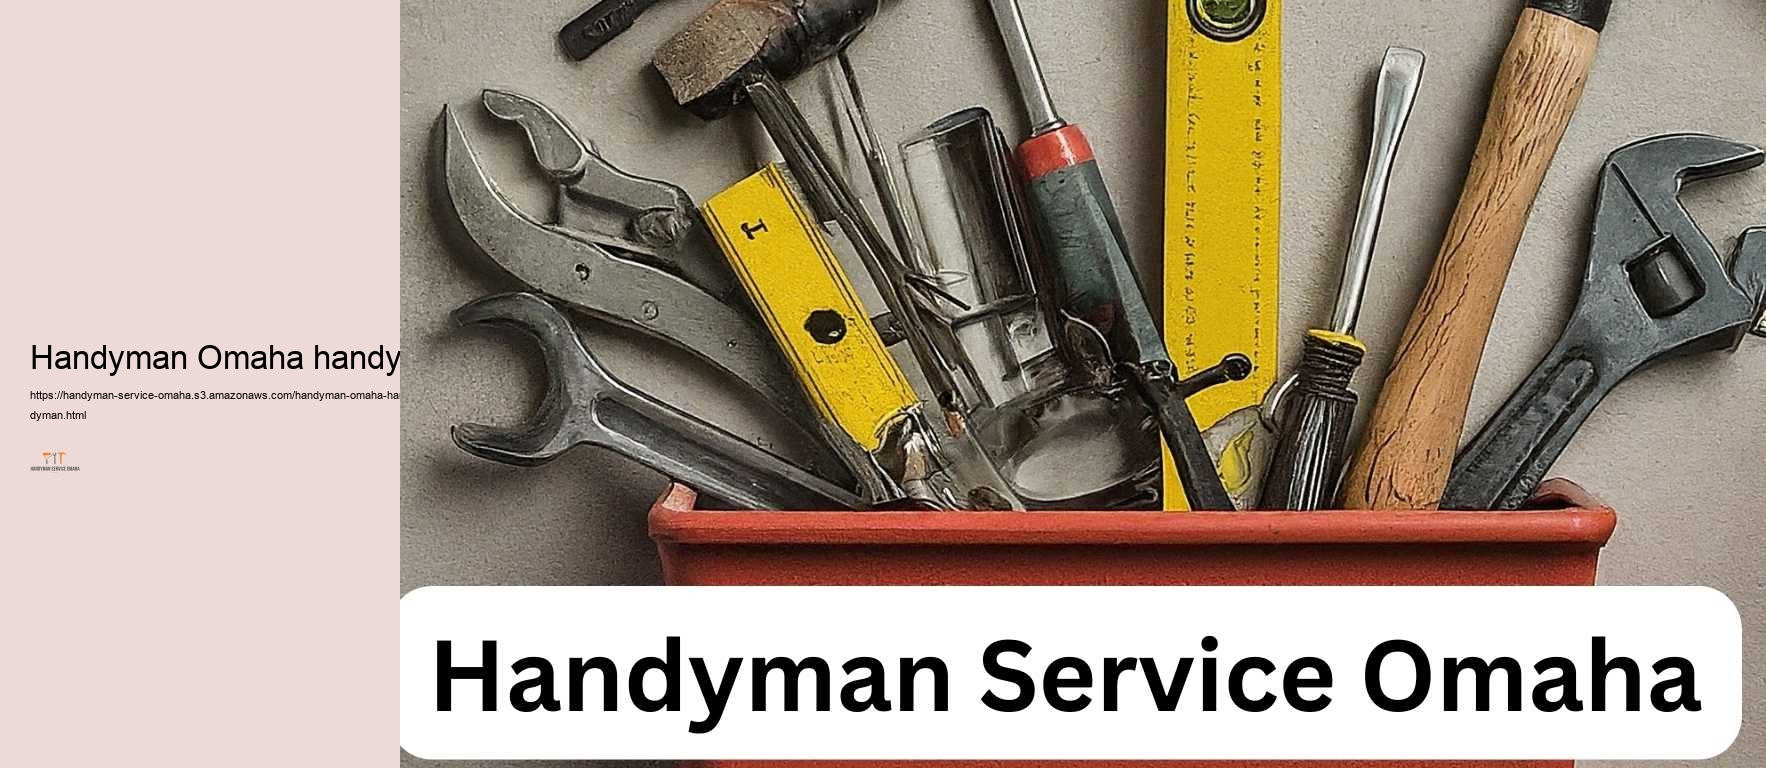 Handyman Omaha handyman